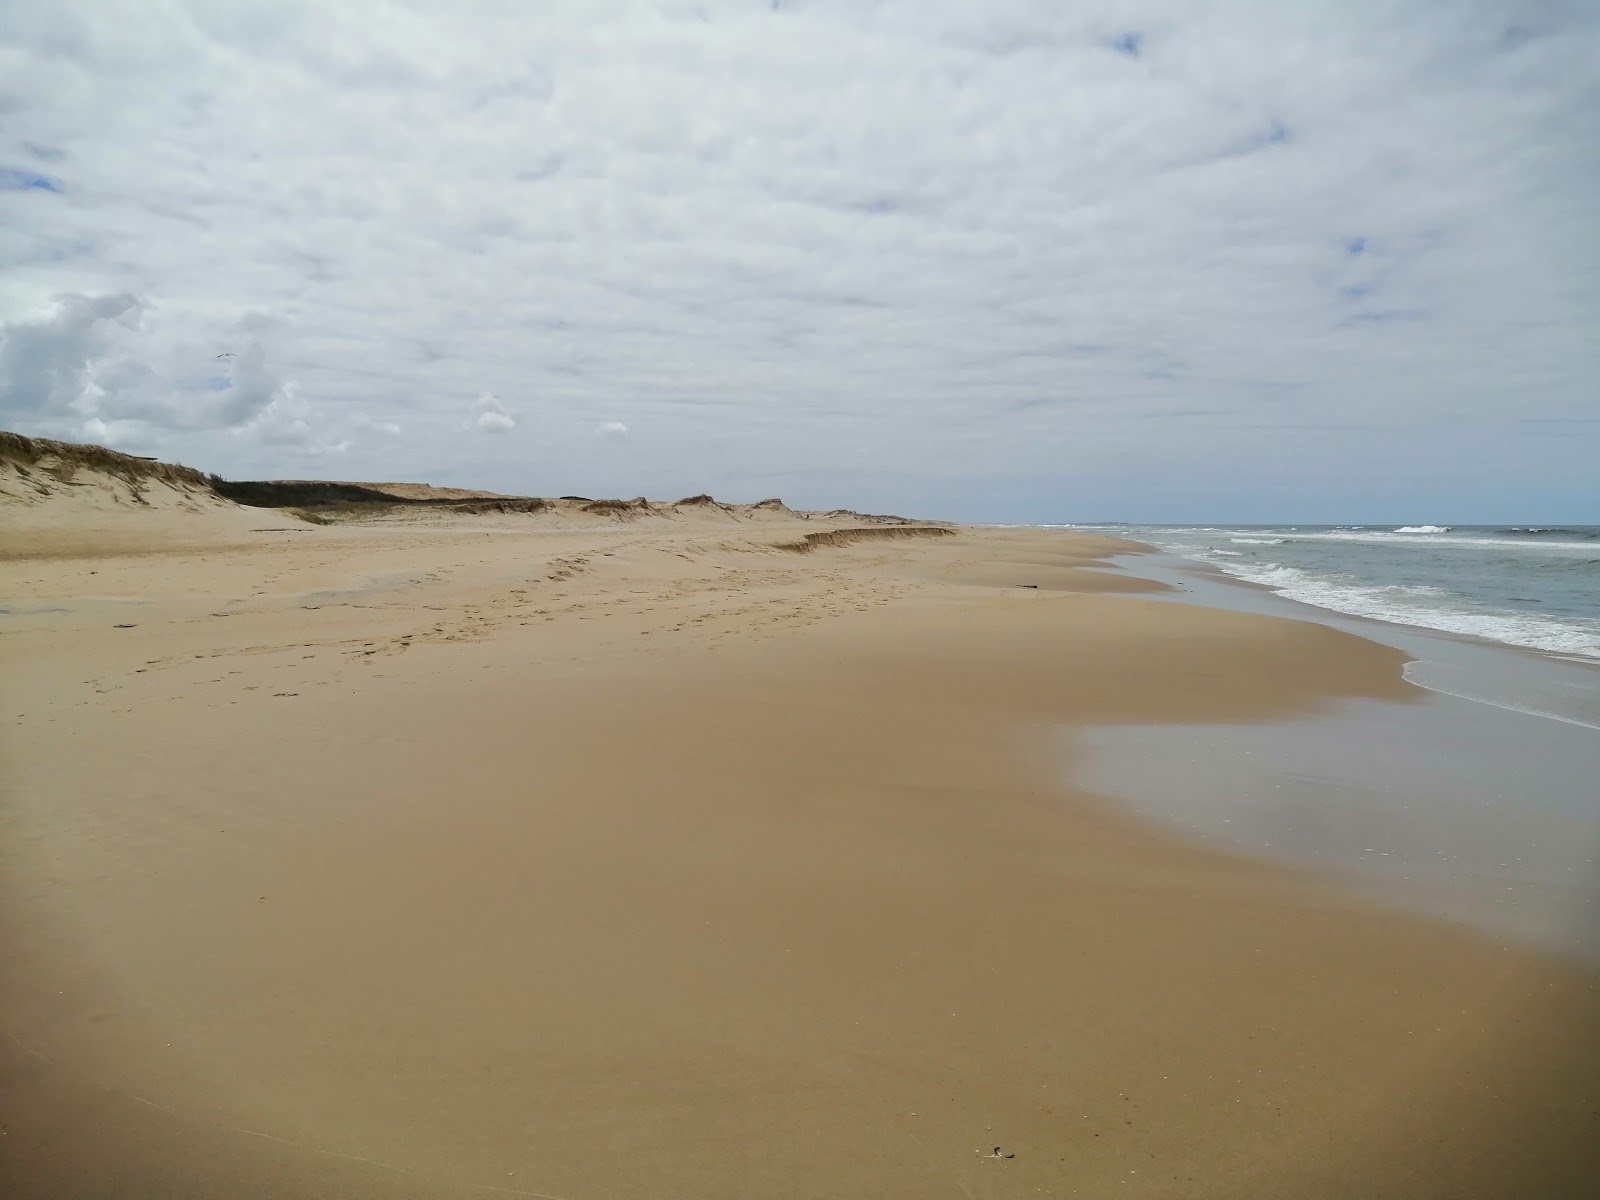 Fotografie cu Oceania del Polonio Beach - locul popular printre cunoscătorii de relaxare